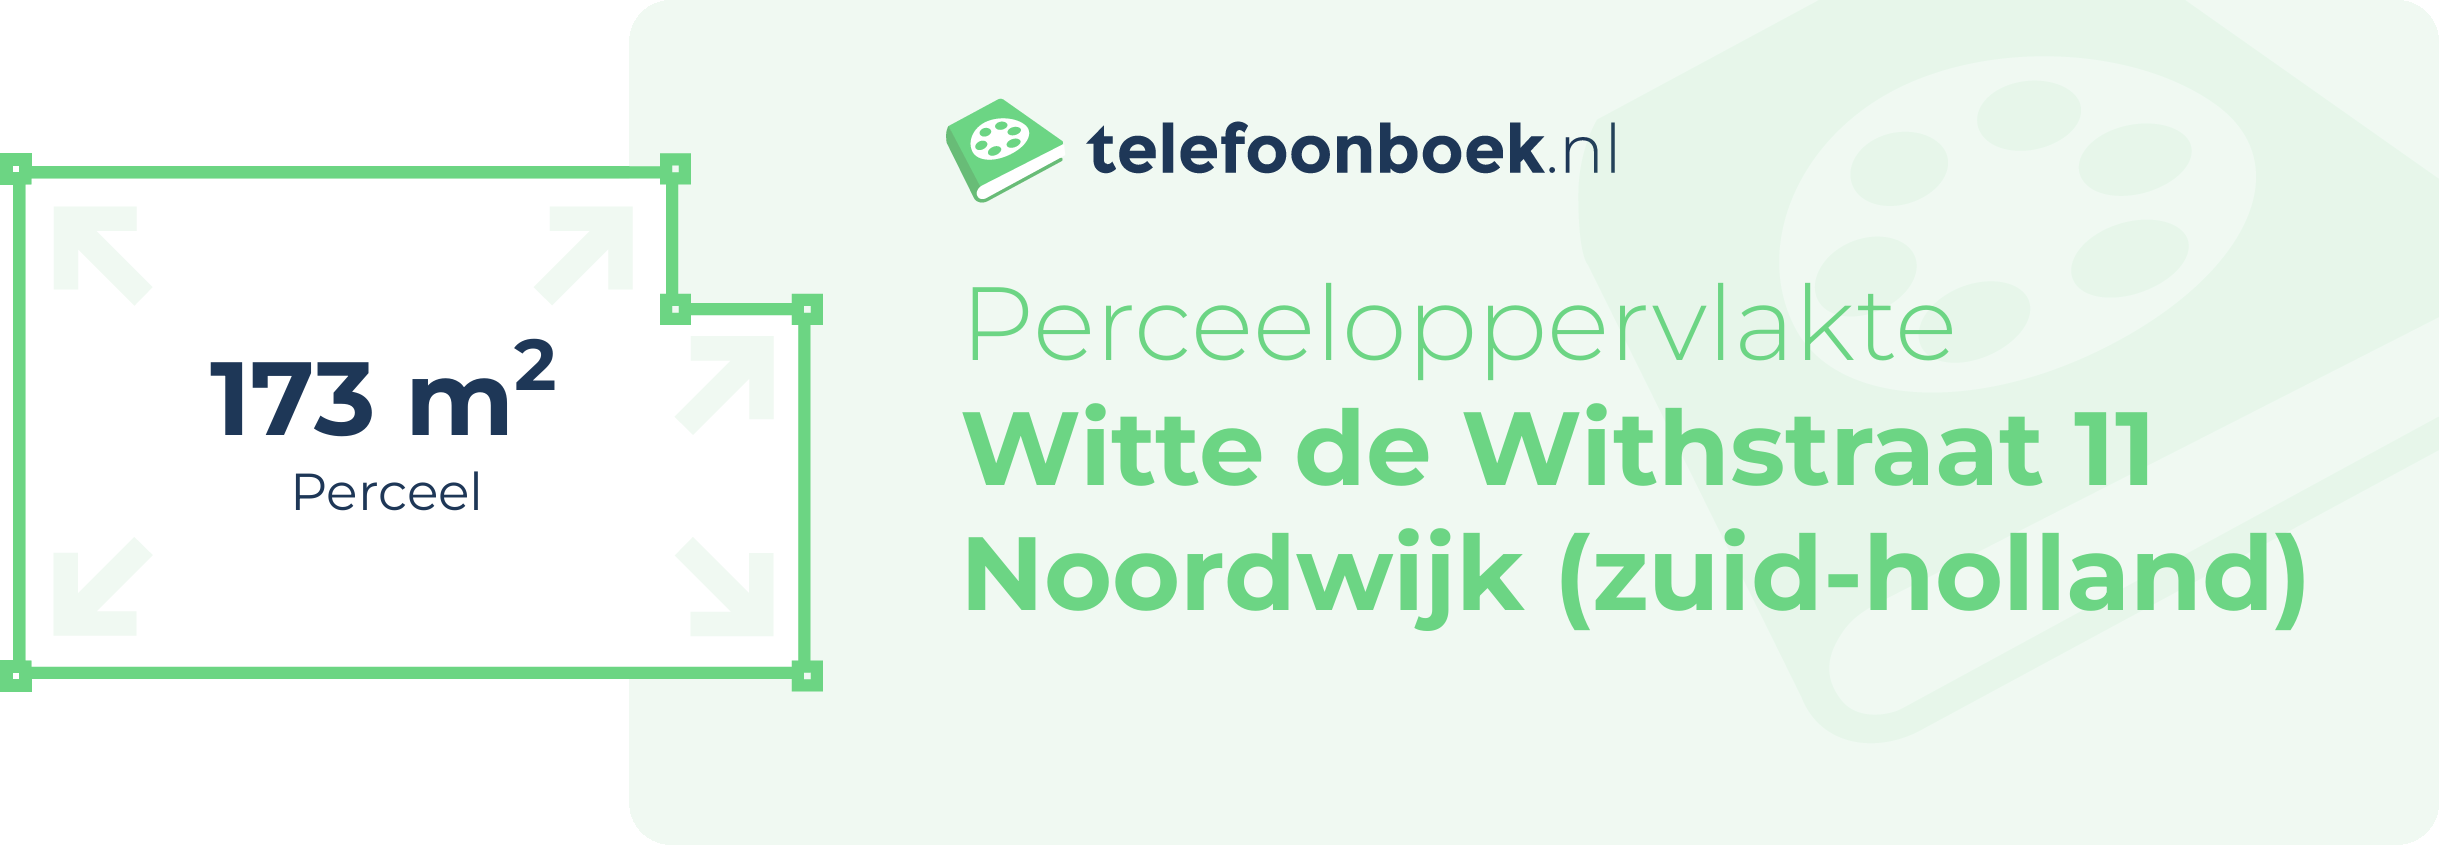 Perceeloppervlakte Witte De Withstraat 11 Noordwijk (Zuid-Holland)